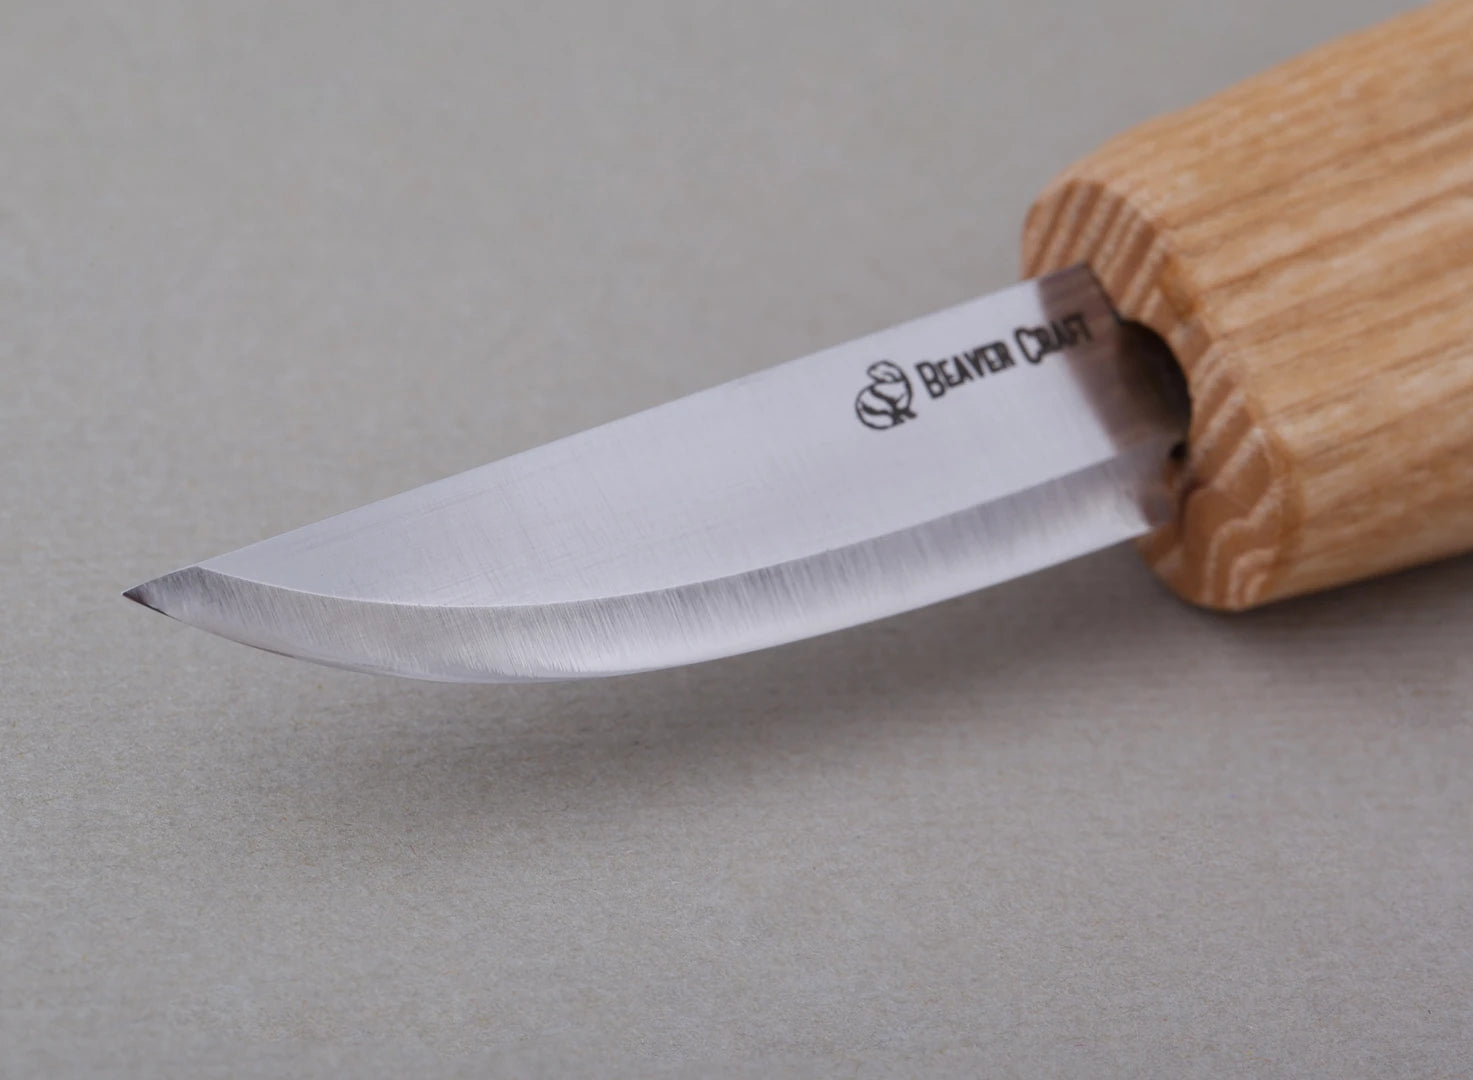 Beaver Craft Whittling Knife